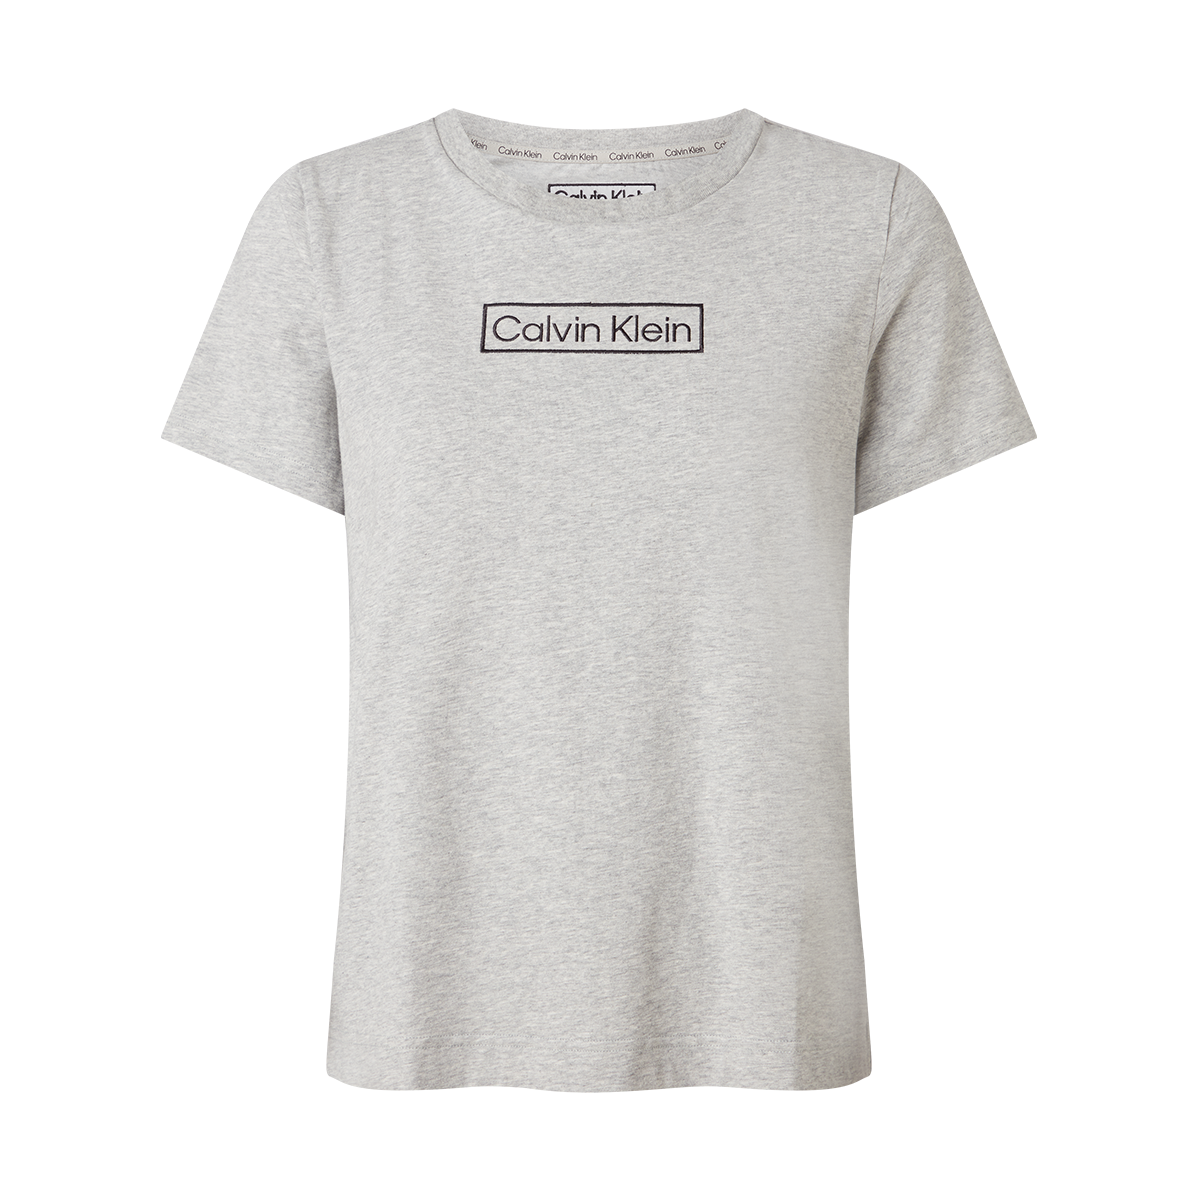 4: Calvin Klein Crew Neck T-shirt, Farve: Grå, Størrelse: XS, Dame